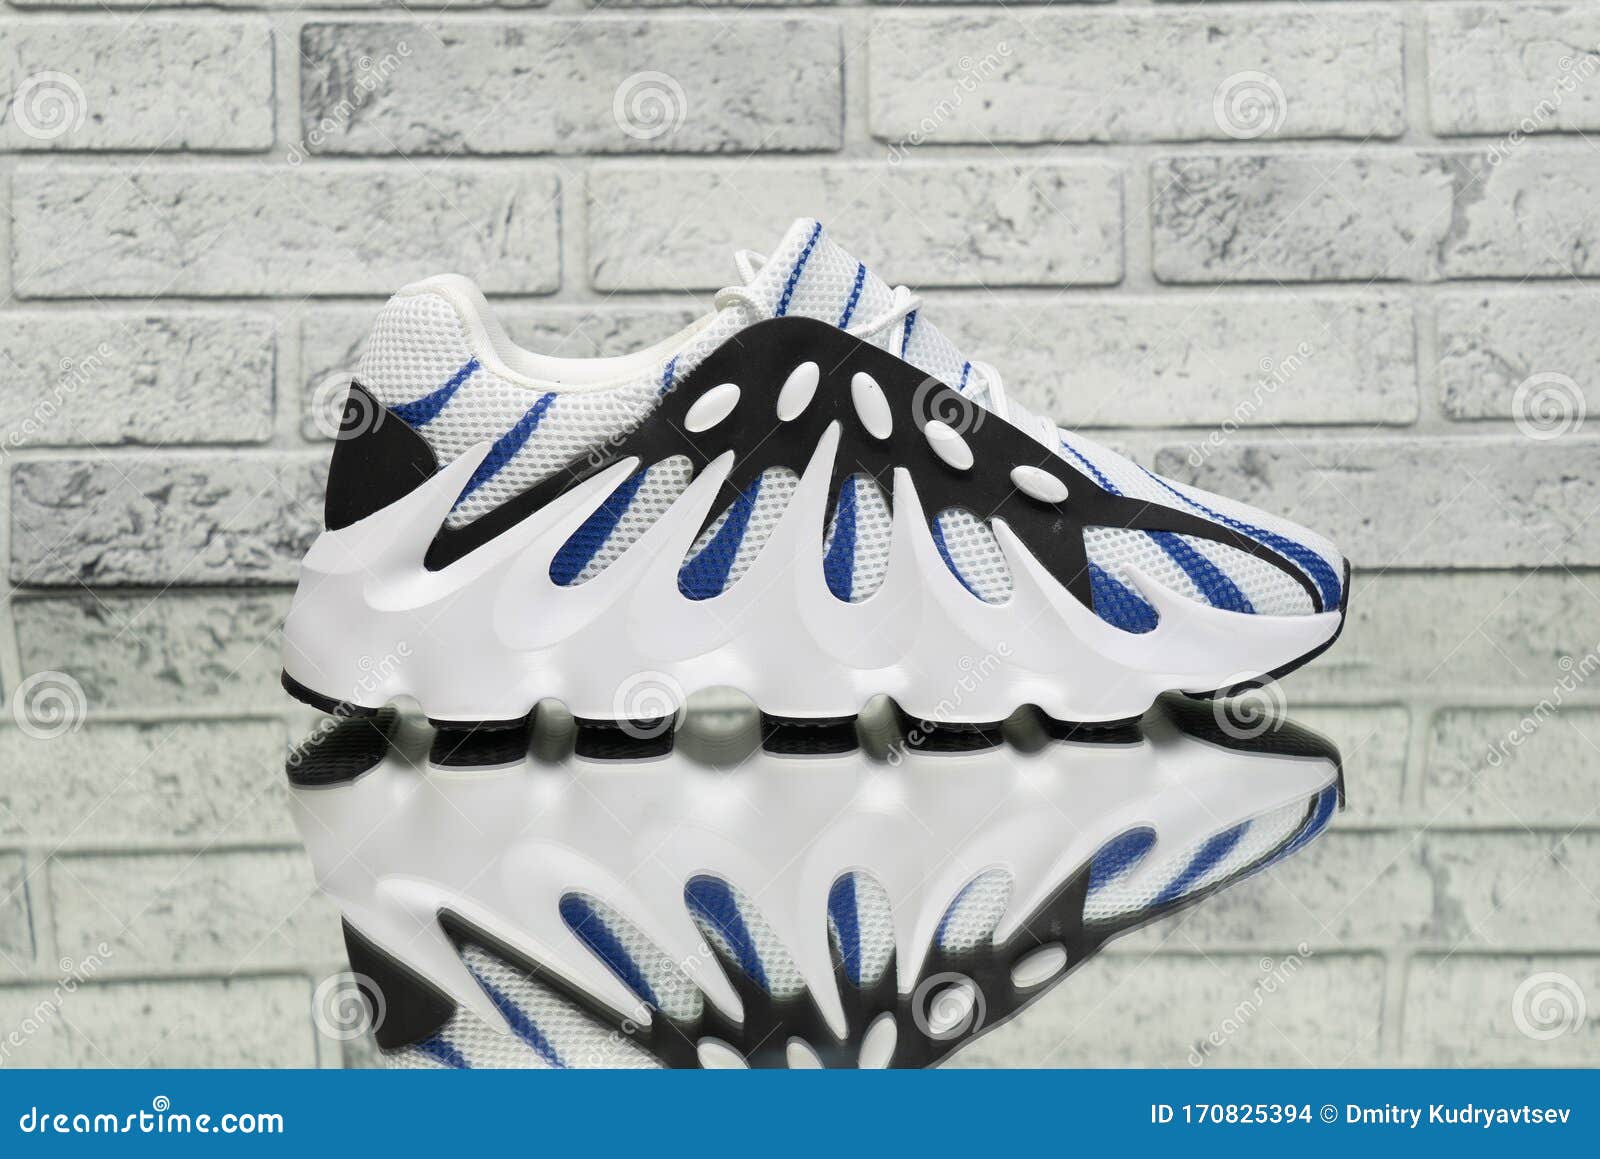 Adidas Yeezy Boost 451 Zapatillas Blancas Moda Imagen de editorial Imagen de fondo, 170825394